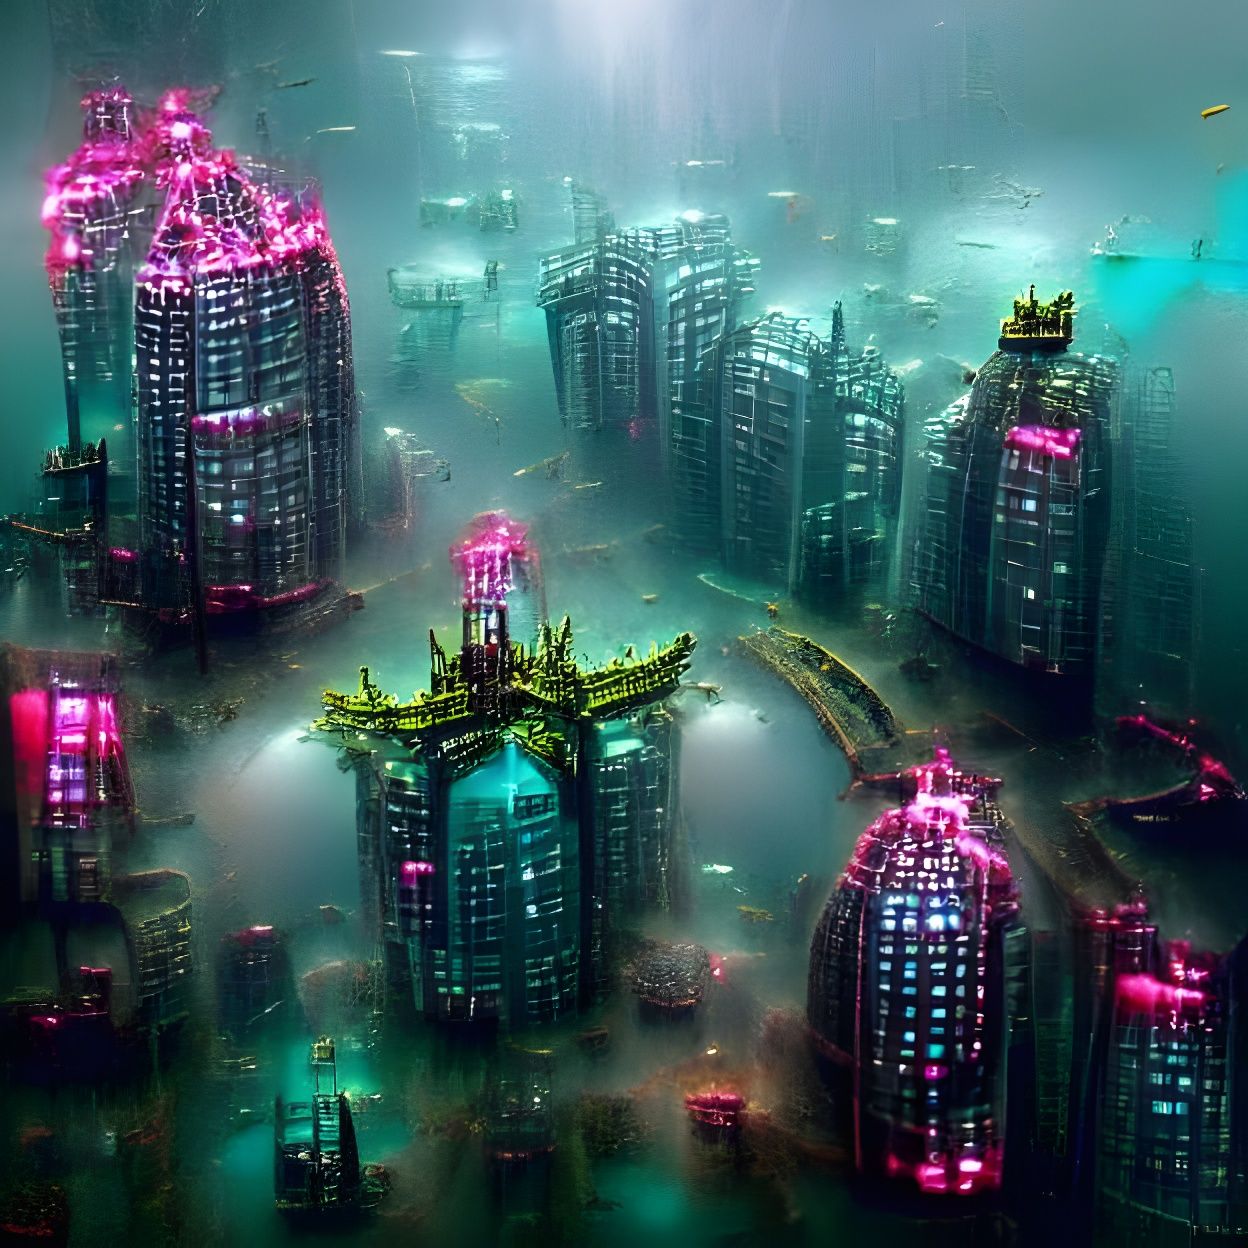 Cyberpunk undersea dystopian city